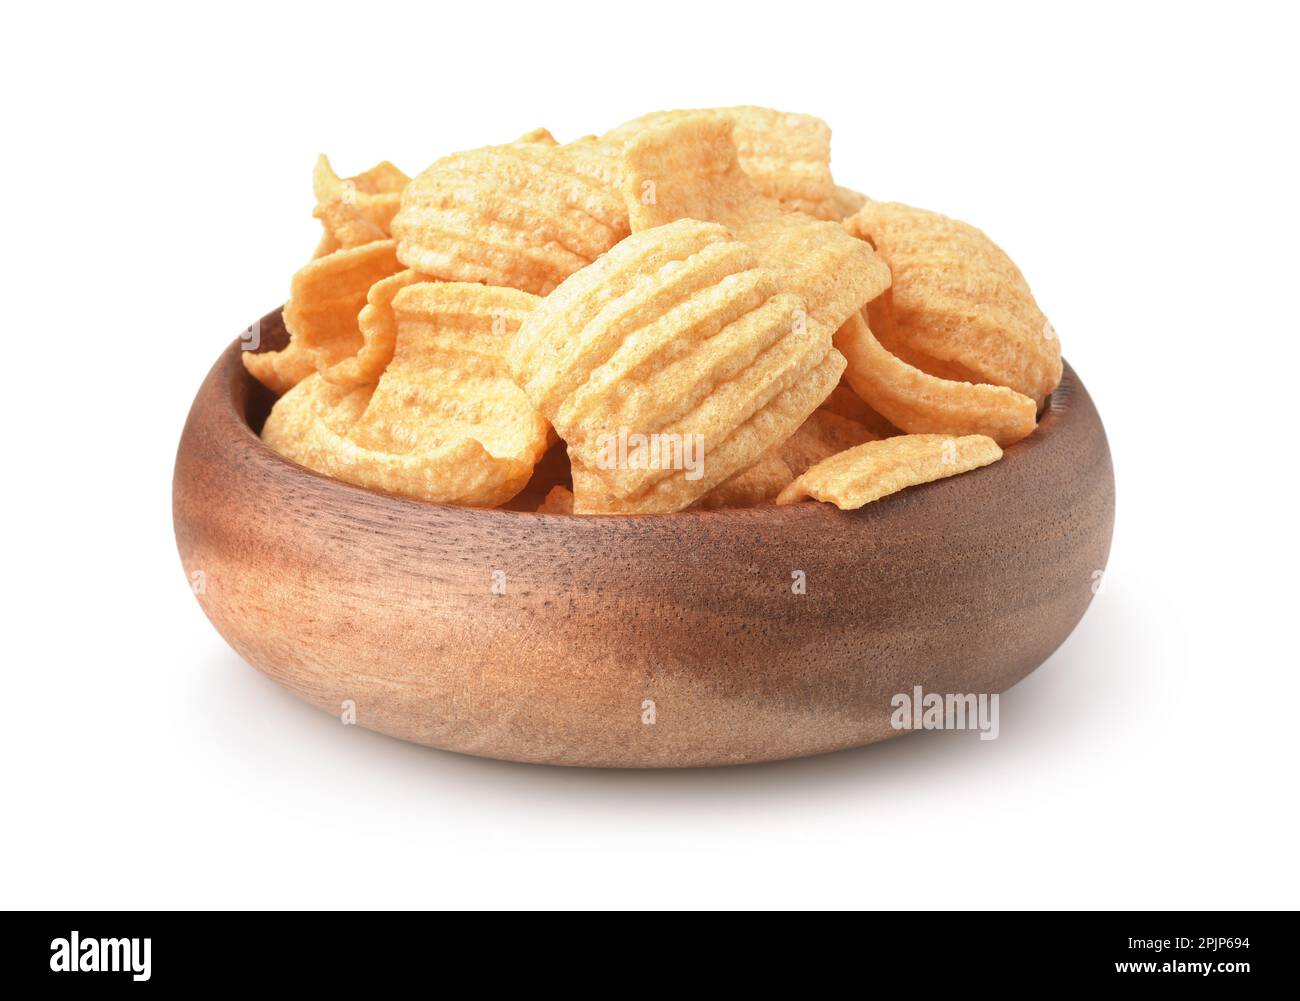 Holzschüssel mit gepufften gerafften Chips, isoliert auf weiß Stockfoto